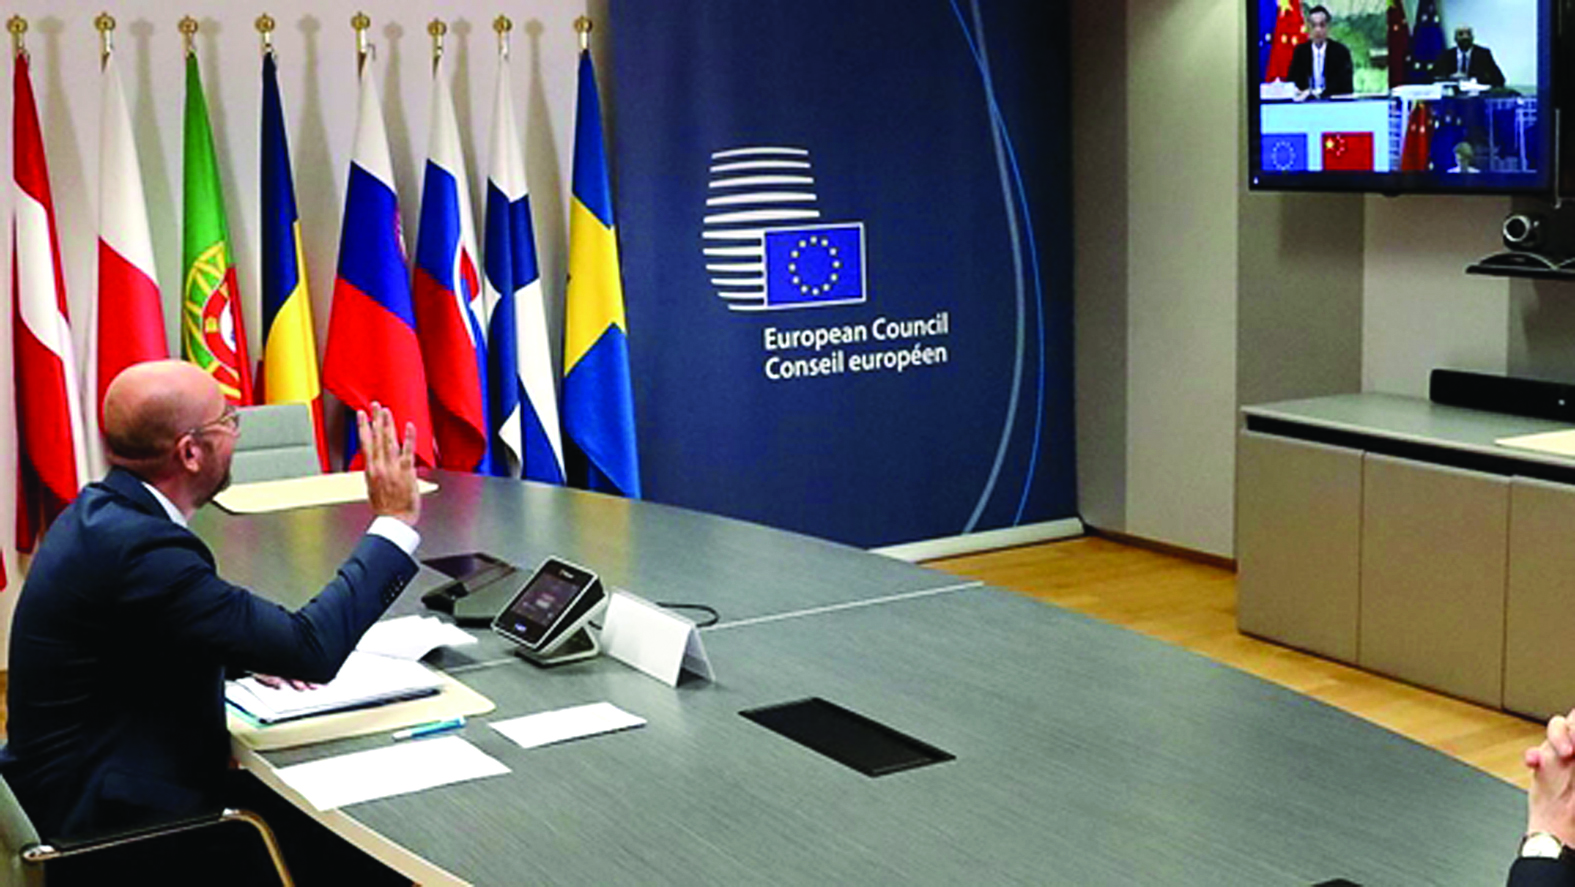  Trung Quốc và EU vừa ký kết thỏa thuận đầu tư. (Chủ tịch Hội đồng châu Âu Charles Michel trao đổi với Thủ tướng Trung Quốc Lý Khắc Cường tại Hội nghị trực tuyến. Ảnh: dw.com)